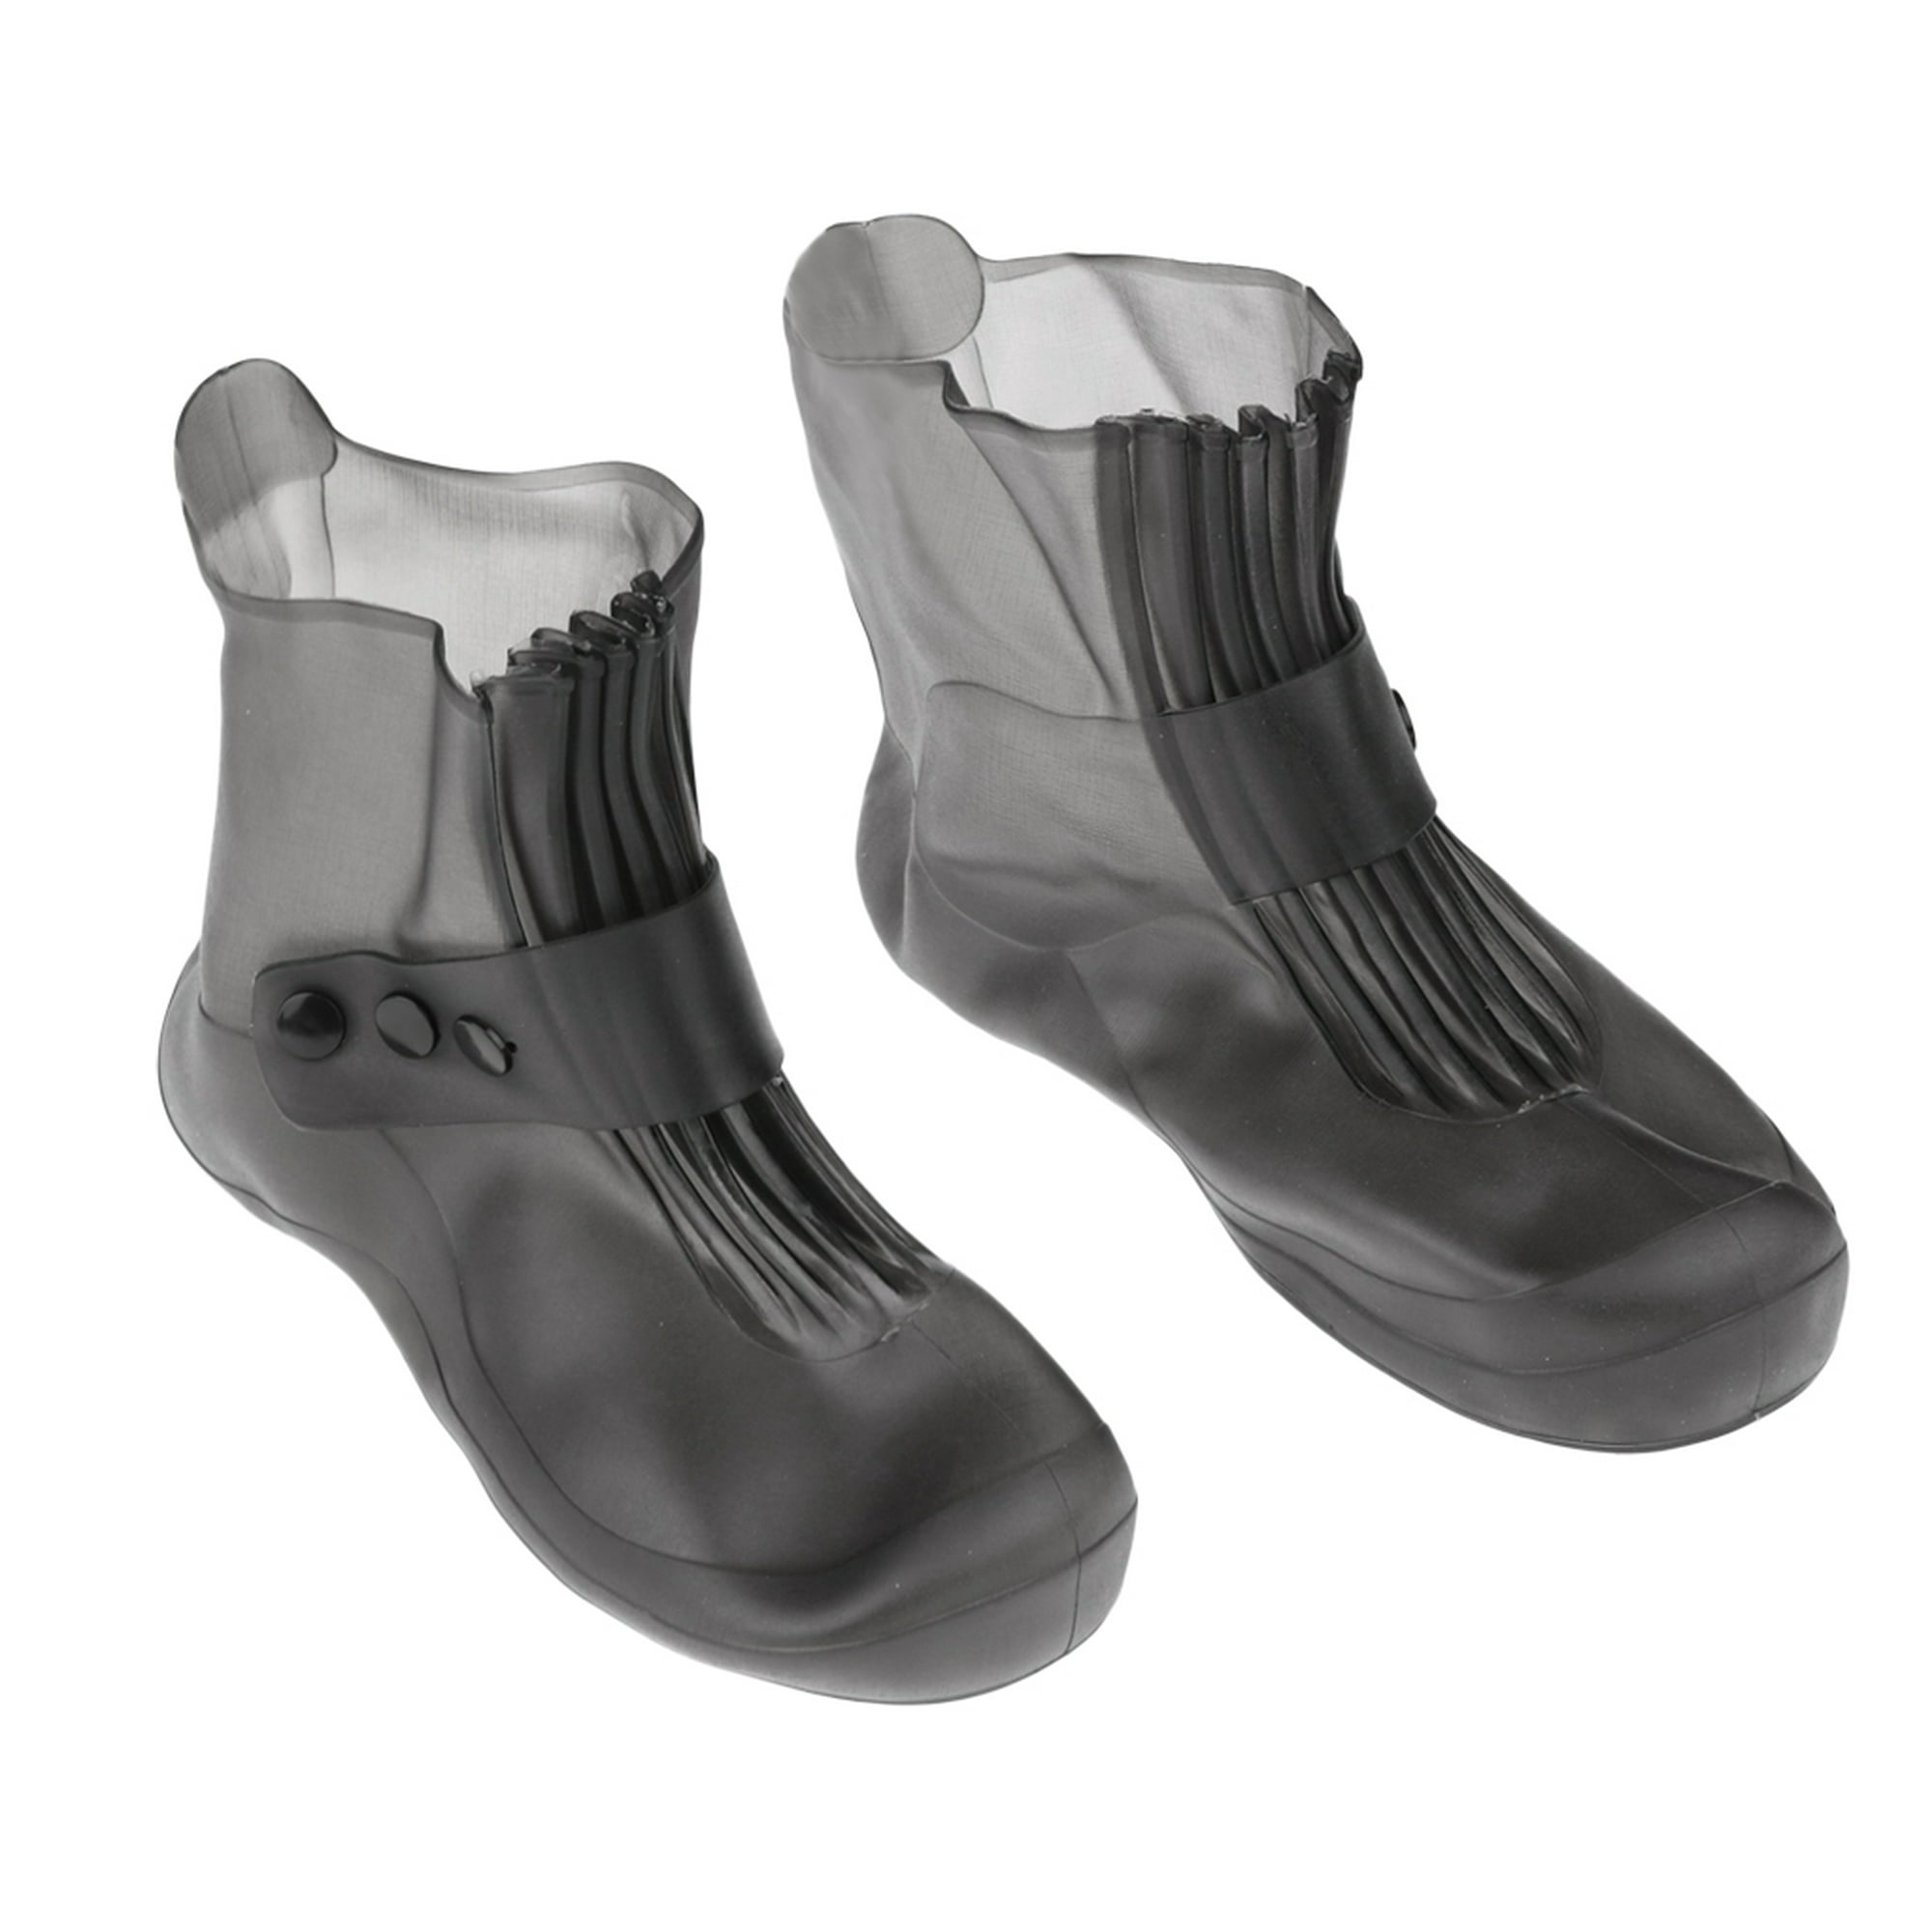 Cubrezapatos impermeables Botas de lluvia Equipo de lluvia de viaje para  mujeres Hombres Blanca m Colcomx Cubre zapatos impermeables